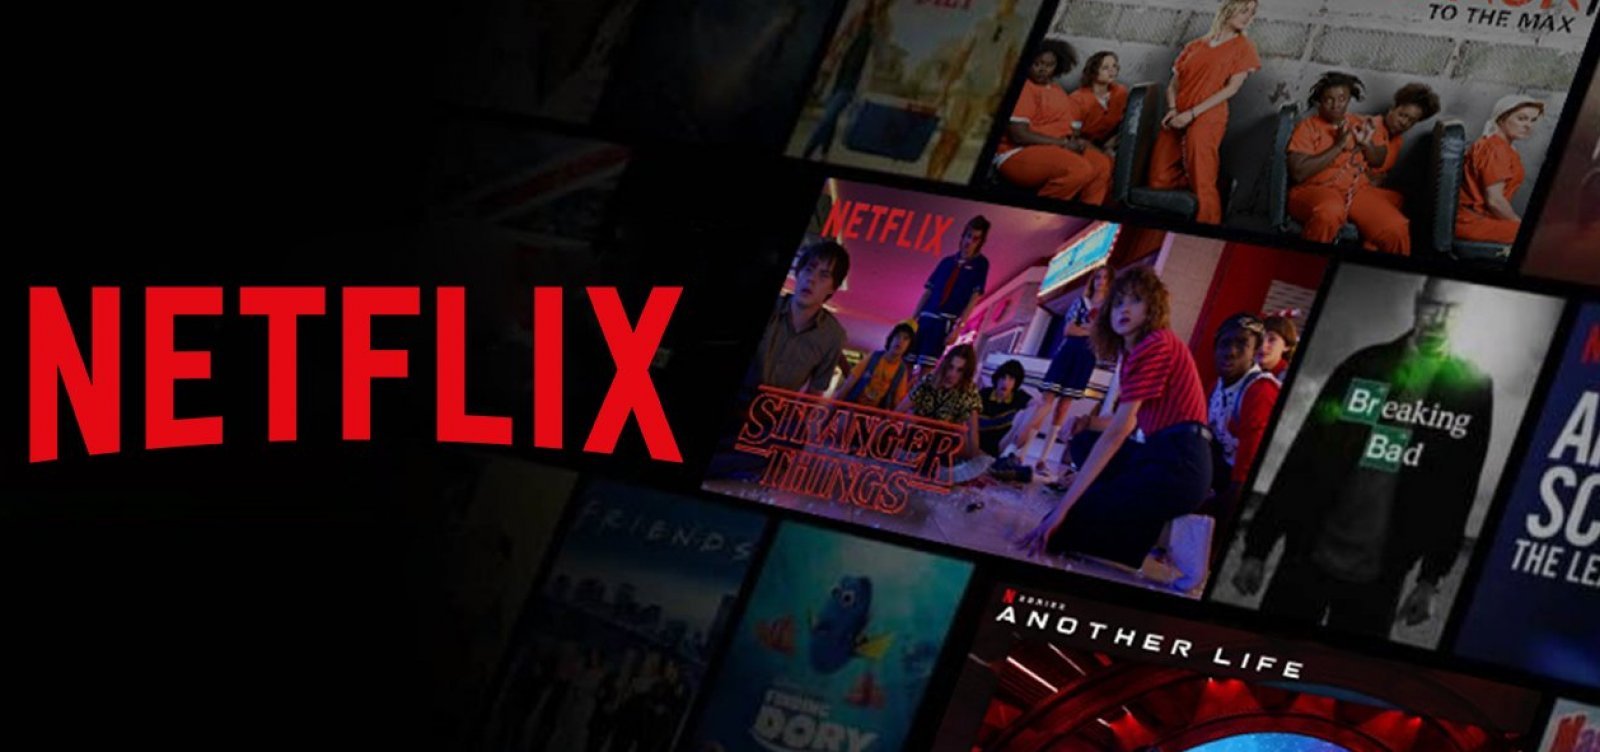 10 séries renovadas pela Netflix para 2022 - BlogTv